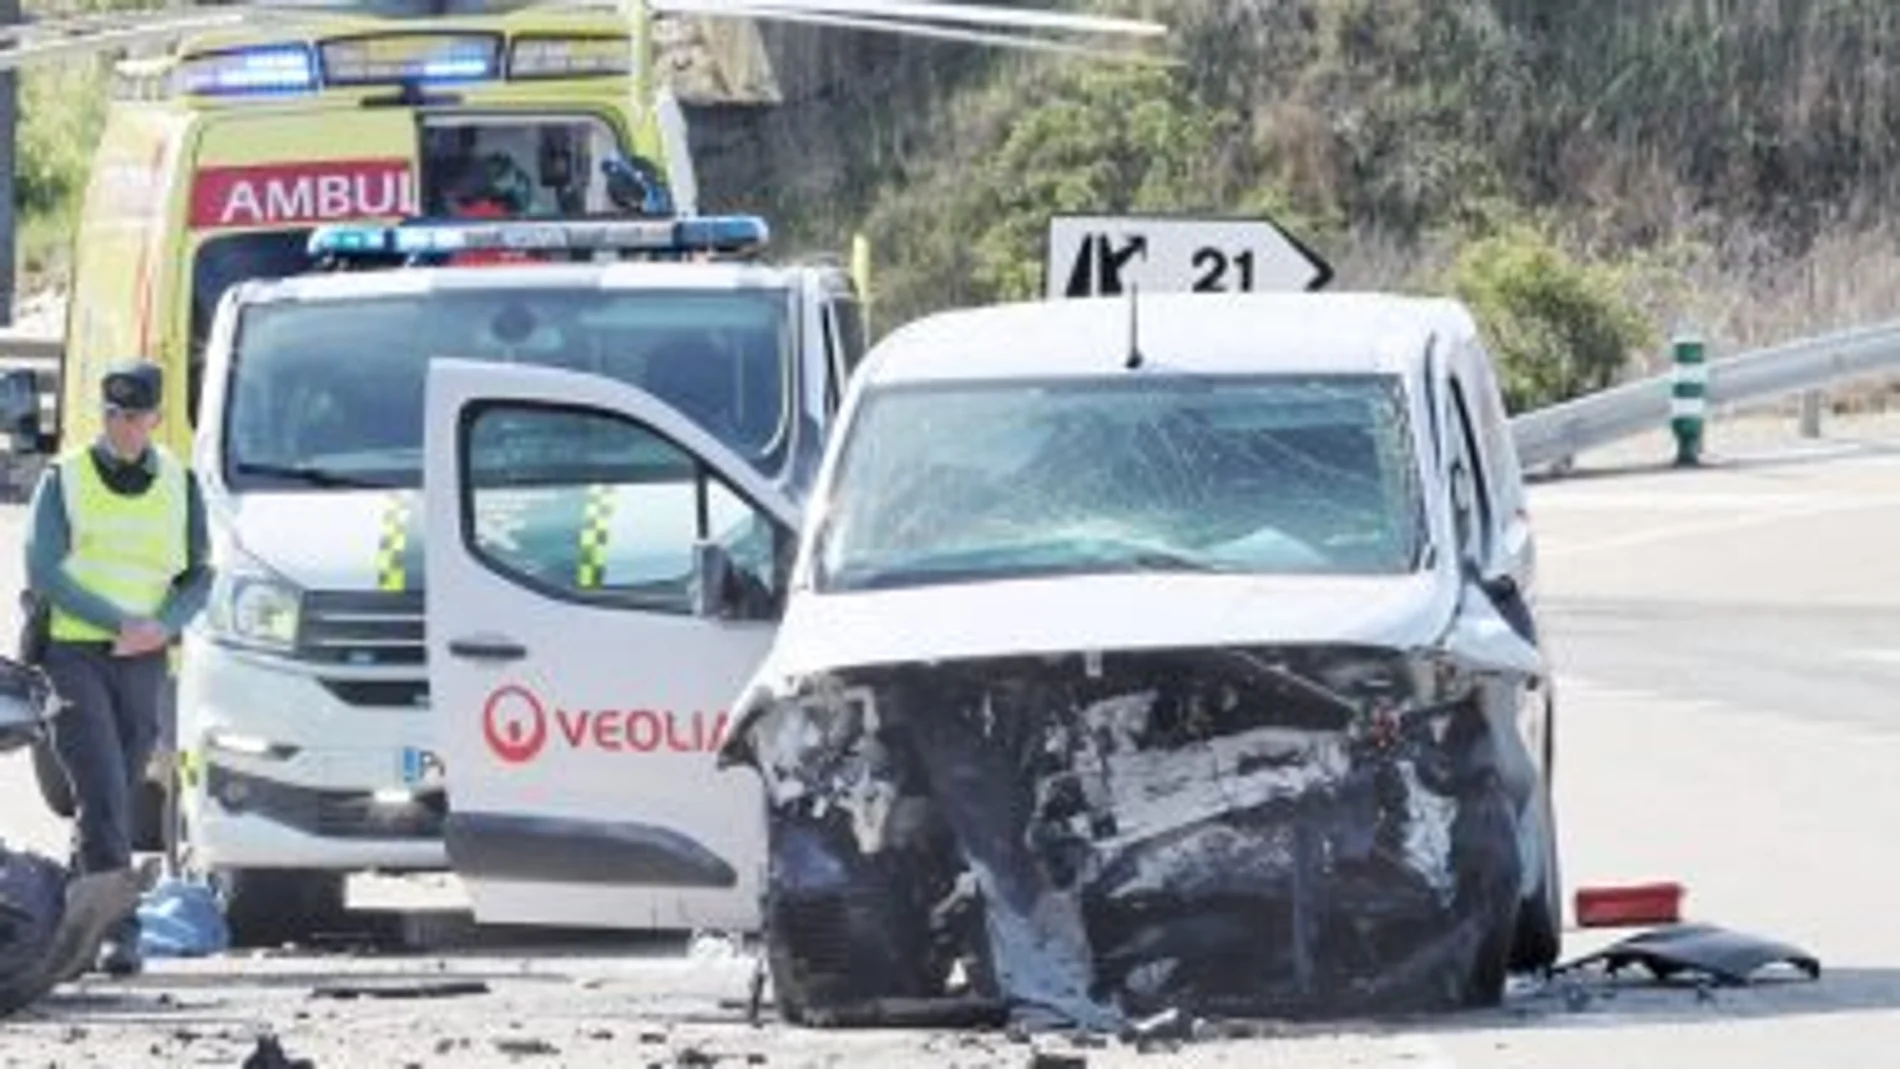 Aspecto de la furgoneta siniestrada en este brutal accidente con al menos dos muertos en Soria